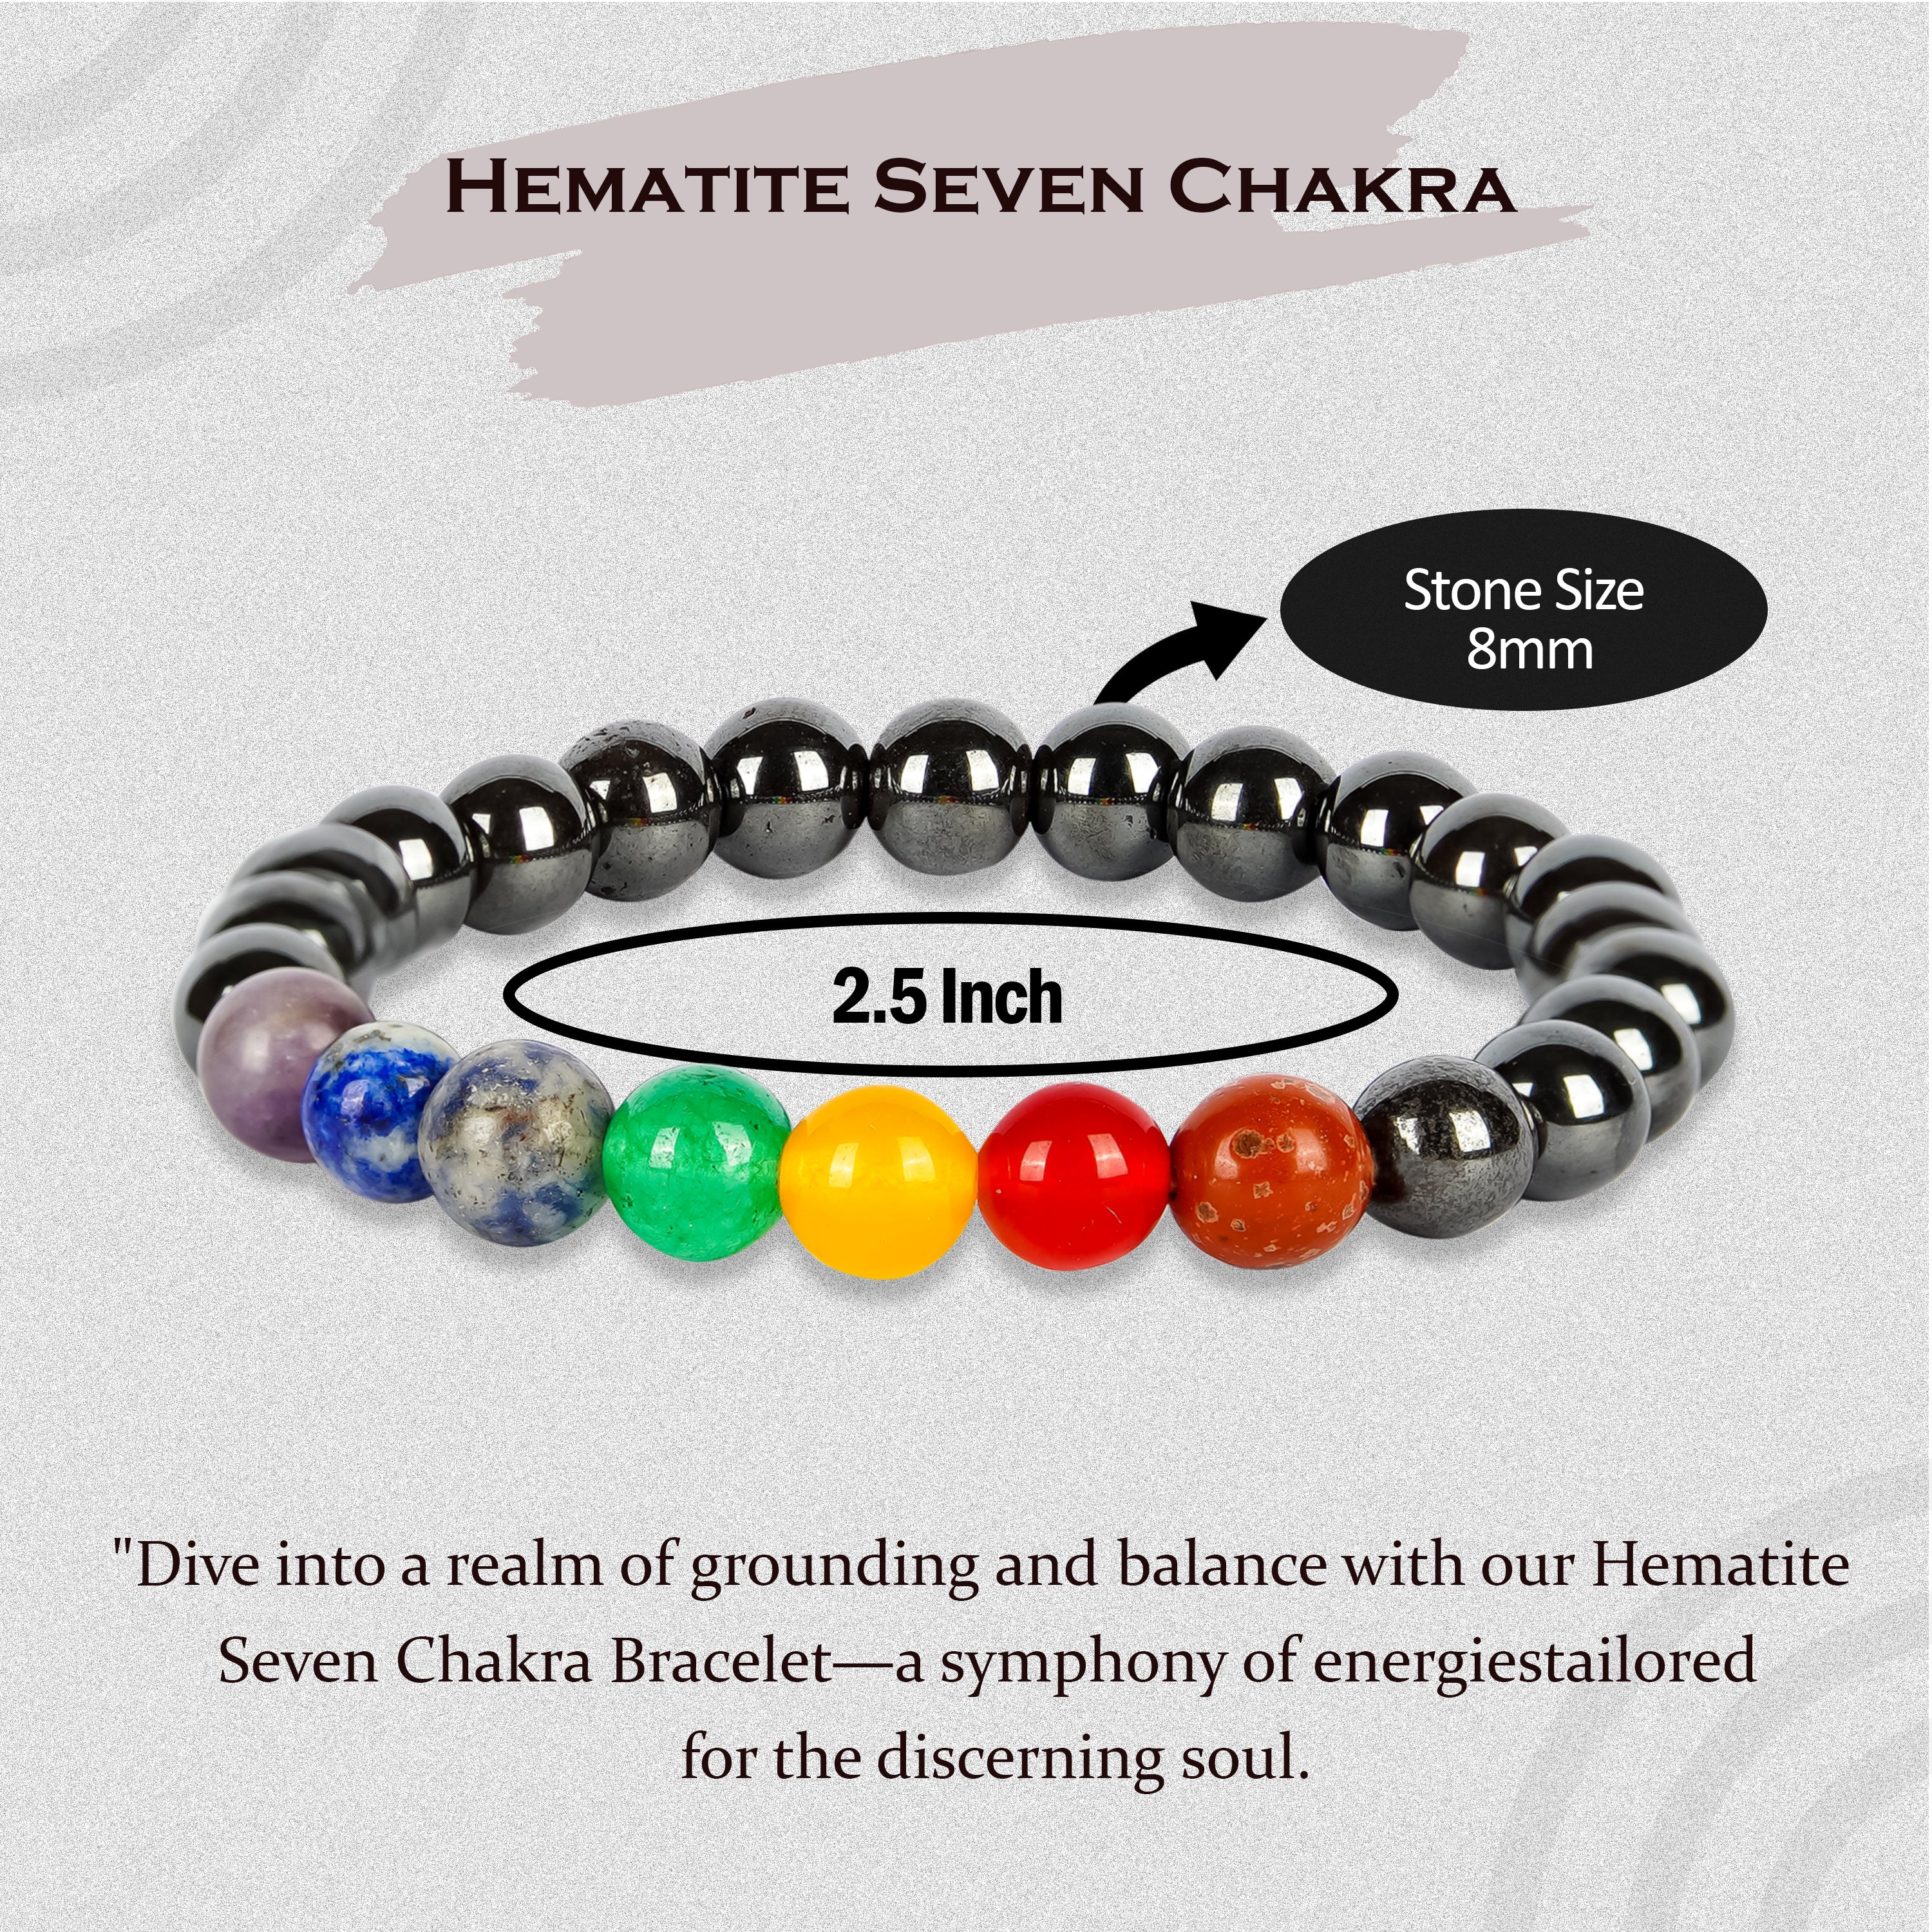 Hematite 7 Chakra Bracelet - Pandit.com